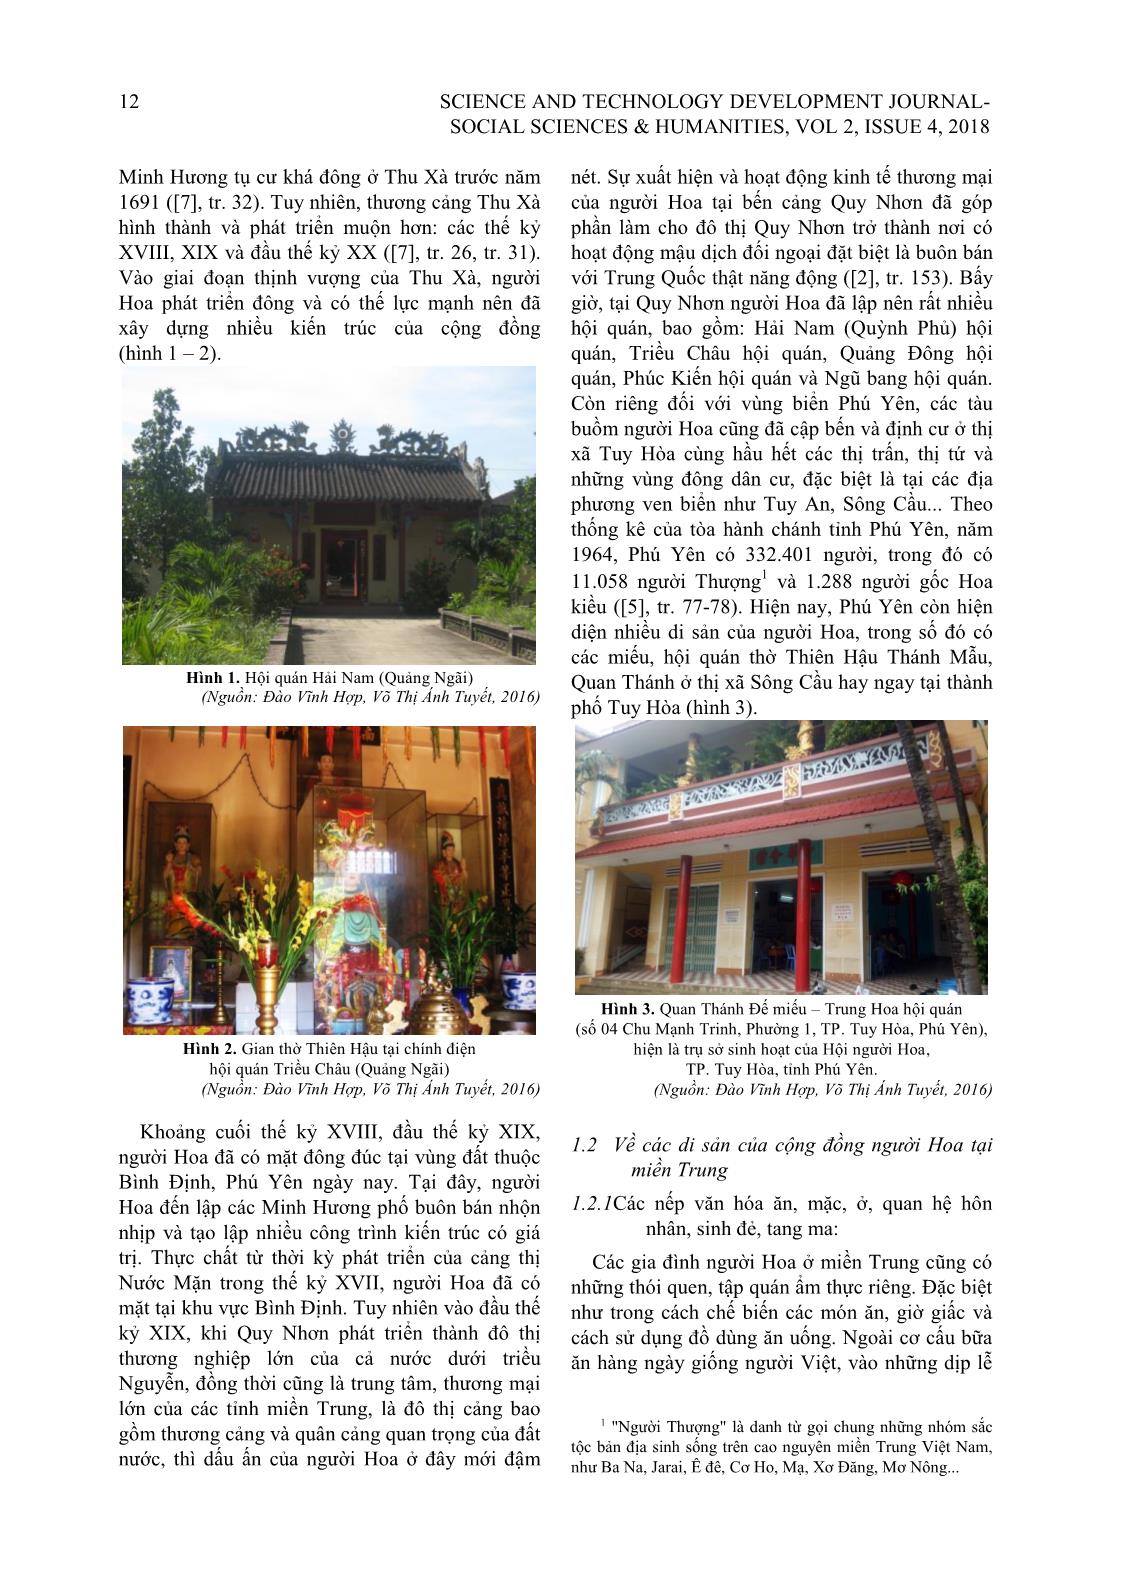 Cộng đồng người Hoa ven biển miền Trung trong giao lưu văn hóa, hội nhập và phát triển trang 2